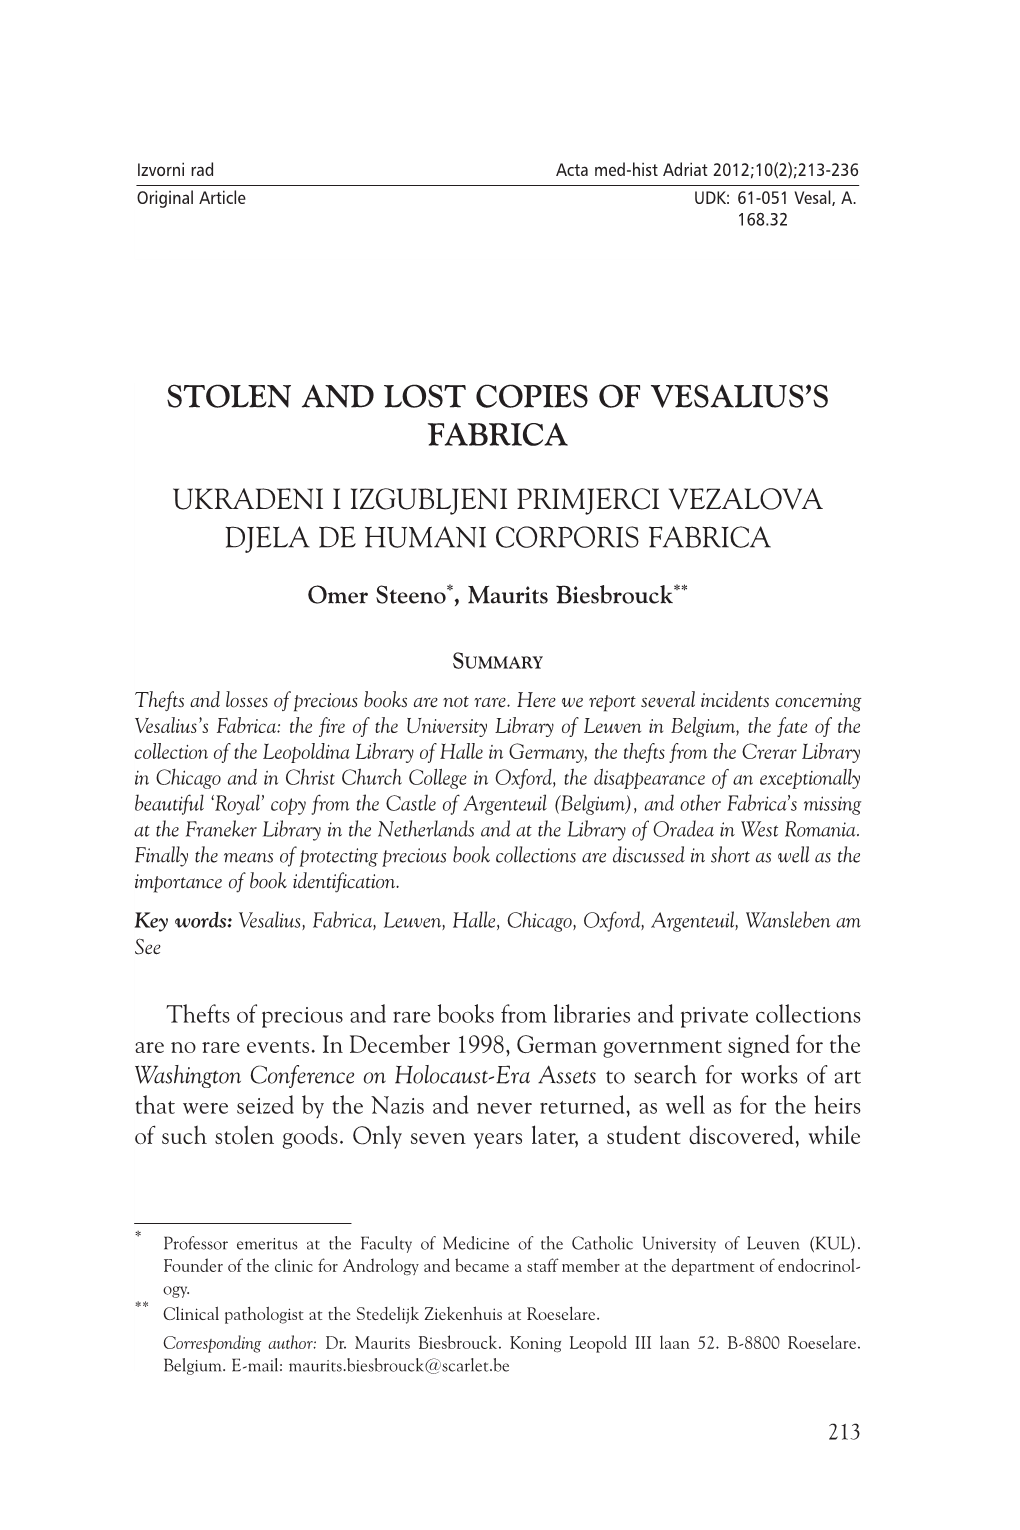 Stolen and Lost Copies of Vesalius's Fabrica